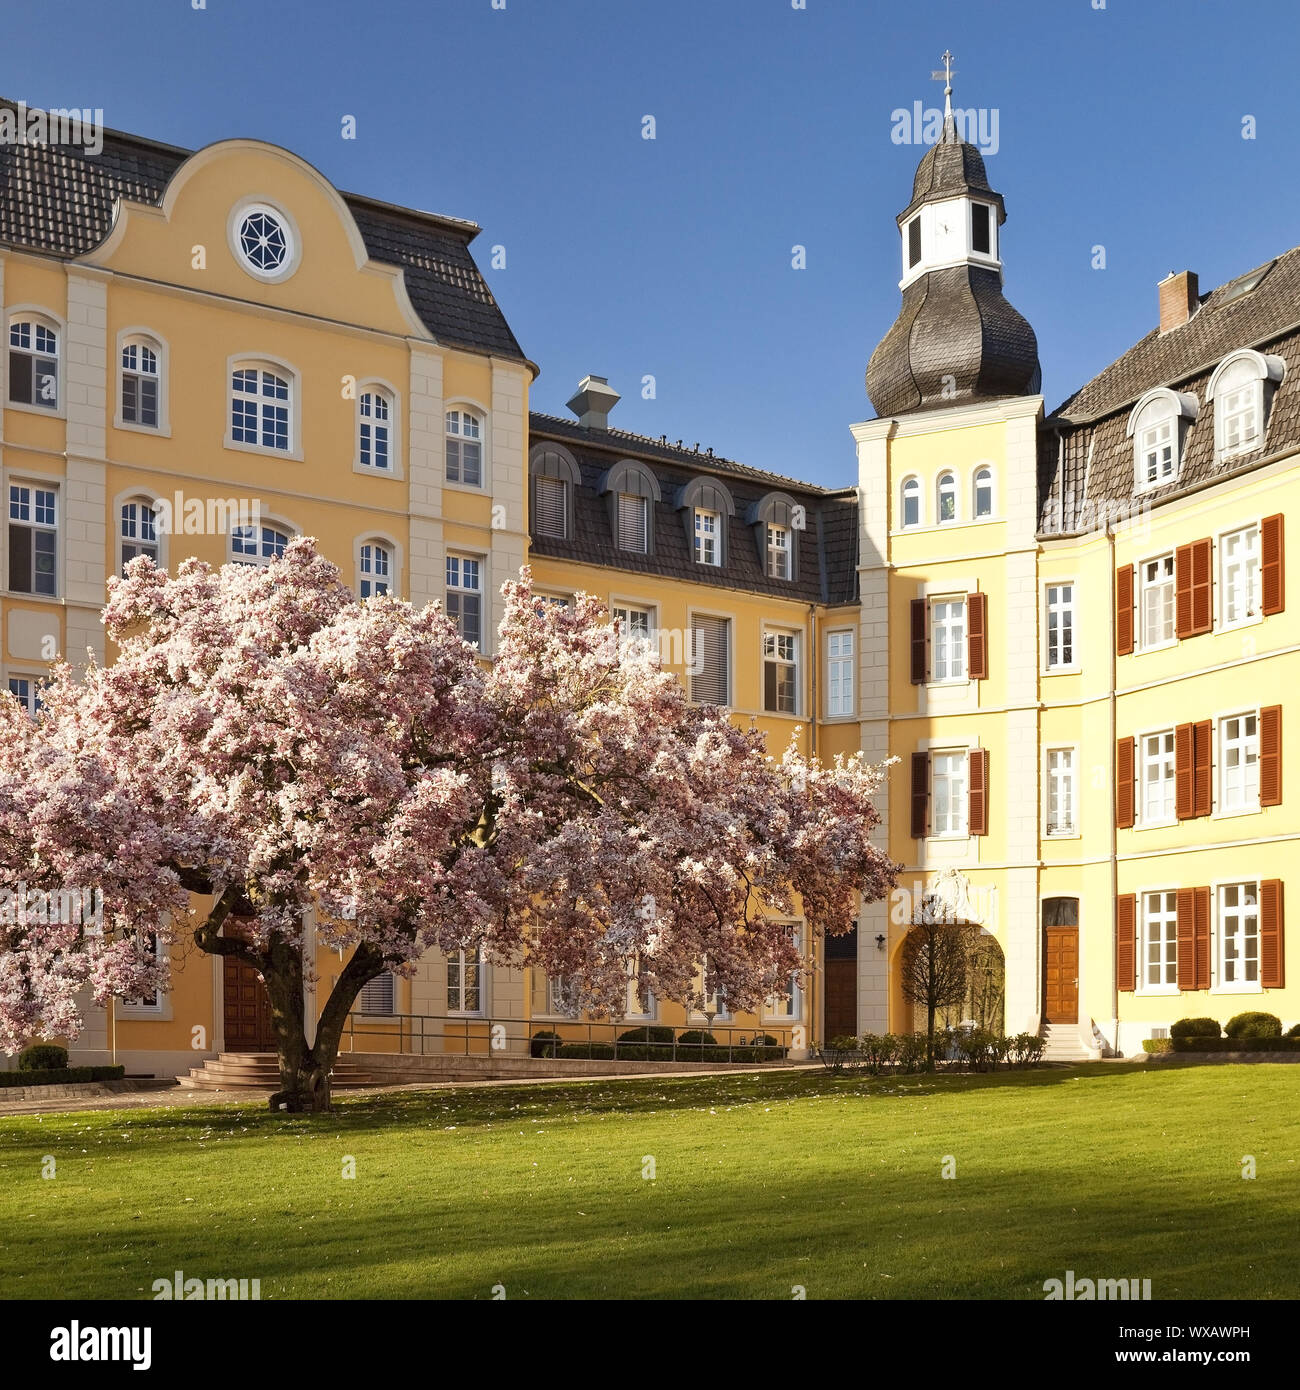 Haus Aspen im Frühjahr, Rees, Niederrhein, Nordrhein-Westfalen, Deutschland, Europa Stockfoto